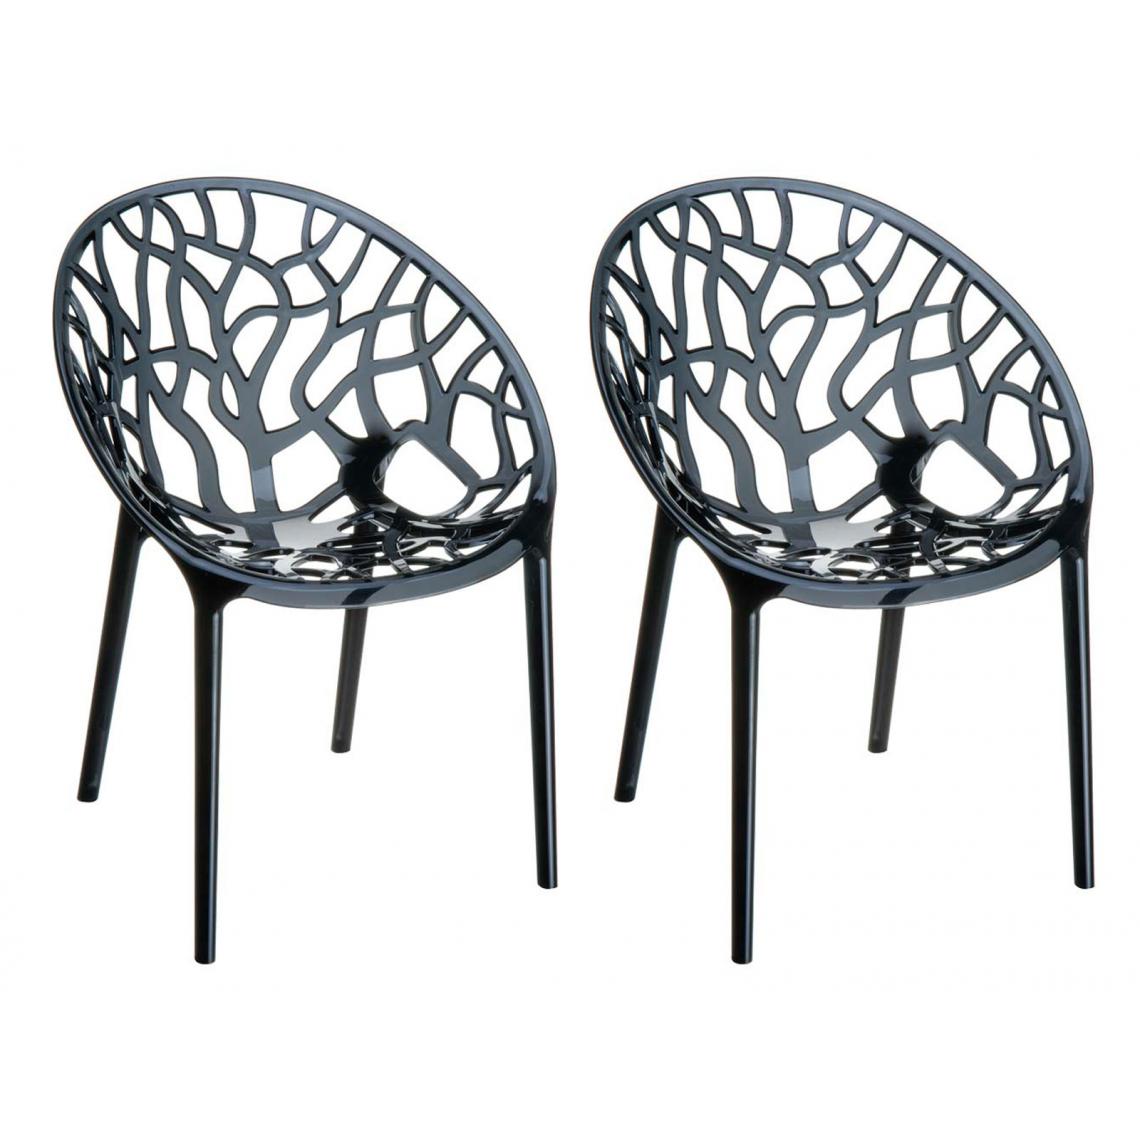 Icaverne - Moderne SET de 2 chaises empilables selection Banjul couleur noir - Tabourets